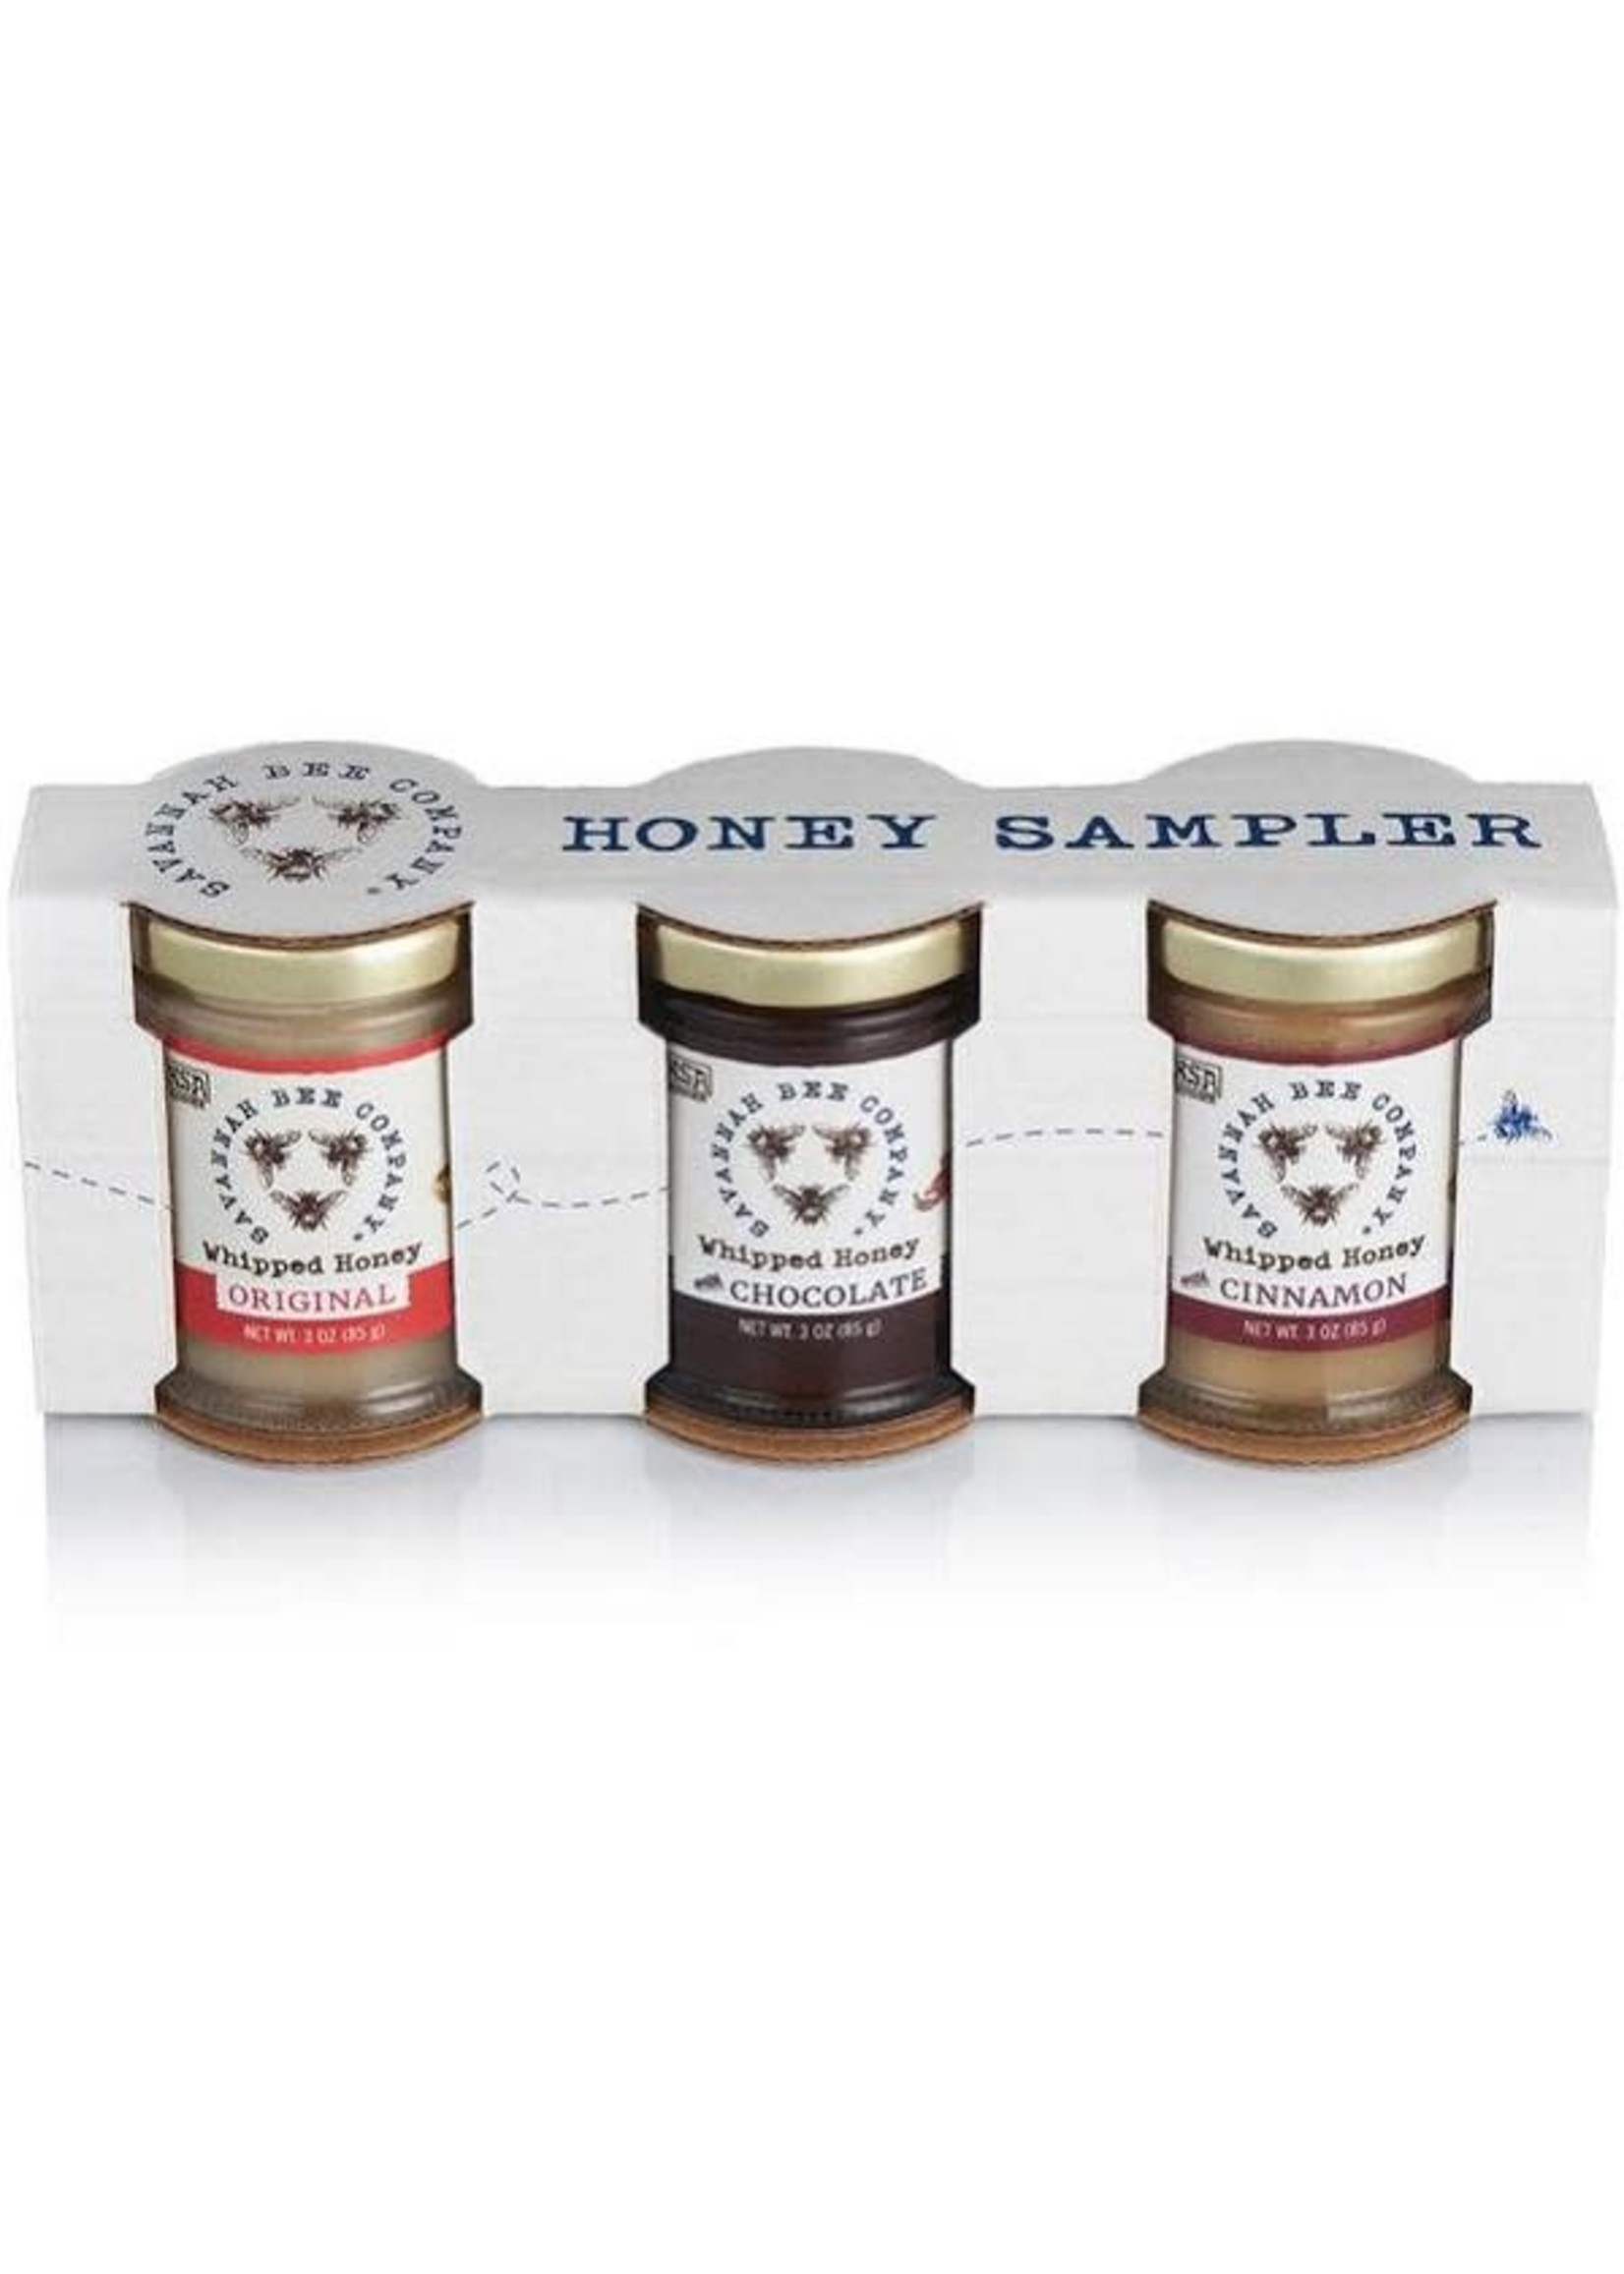 Savannah Bee Company 3oz Whipped Honey Gift Set - 3 Honeys